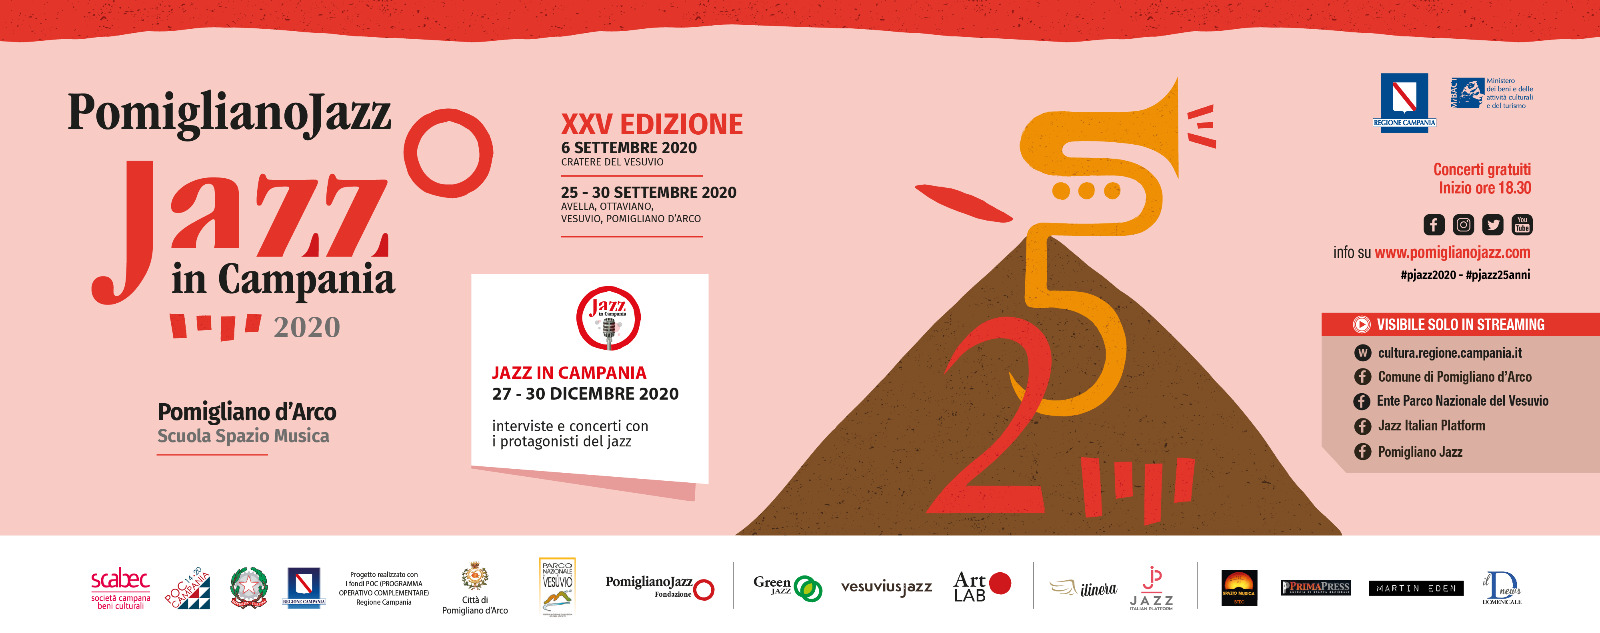 Pomigliano Jazz XXV edizione: dal 27 al 30 dicembre ‘Jazz in Campania’